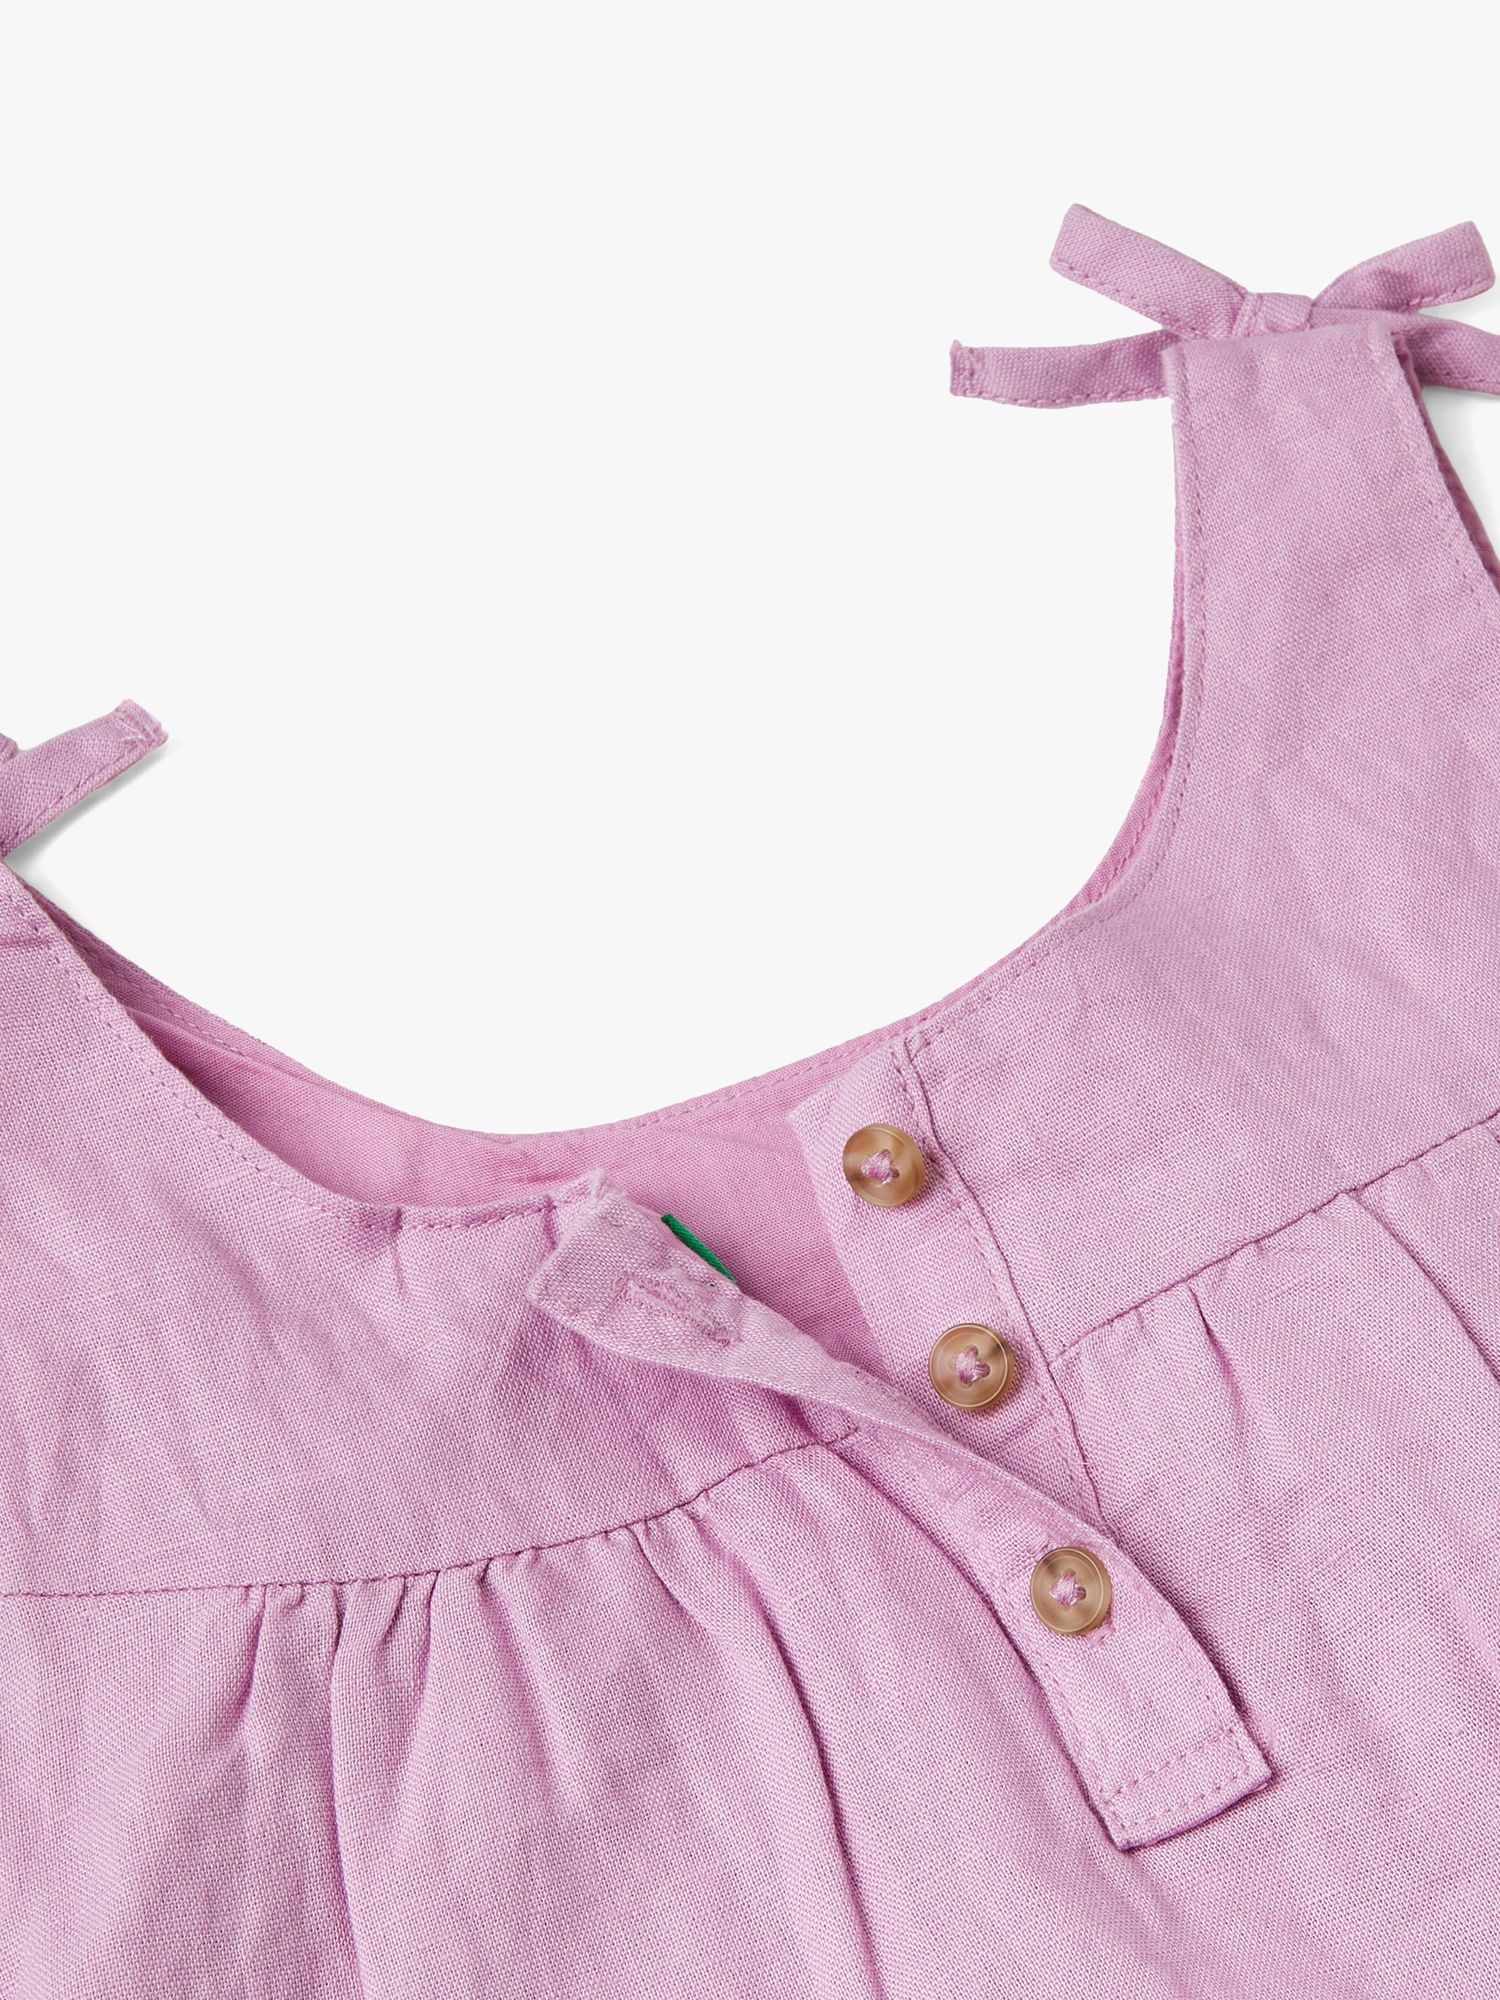 Benetton Kids' Linen Blend Ruffle Bow Detail Dress, Lilac, 3-4 years